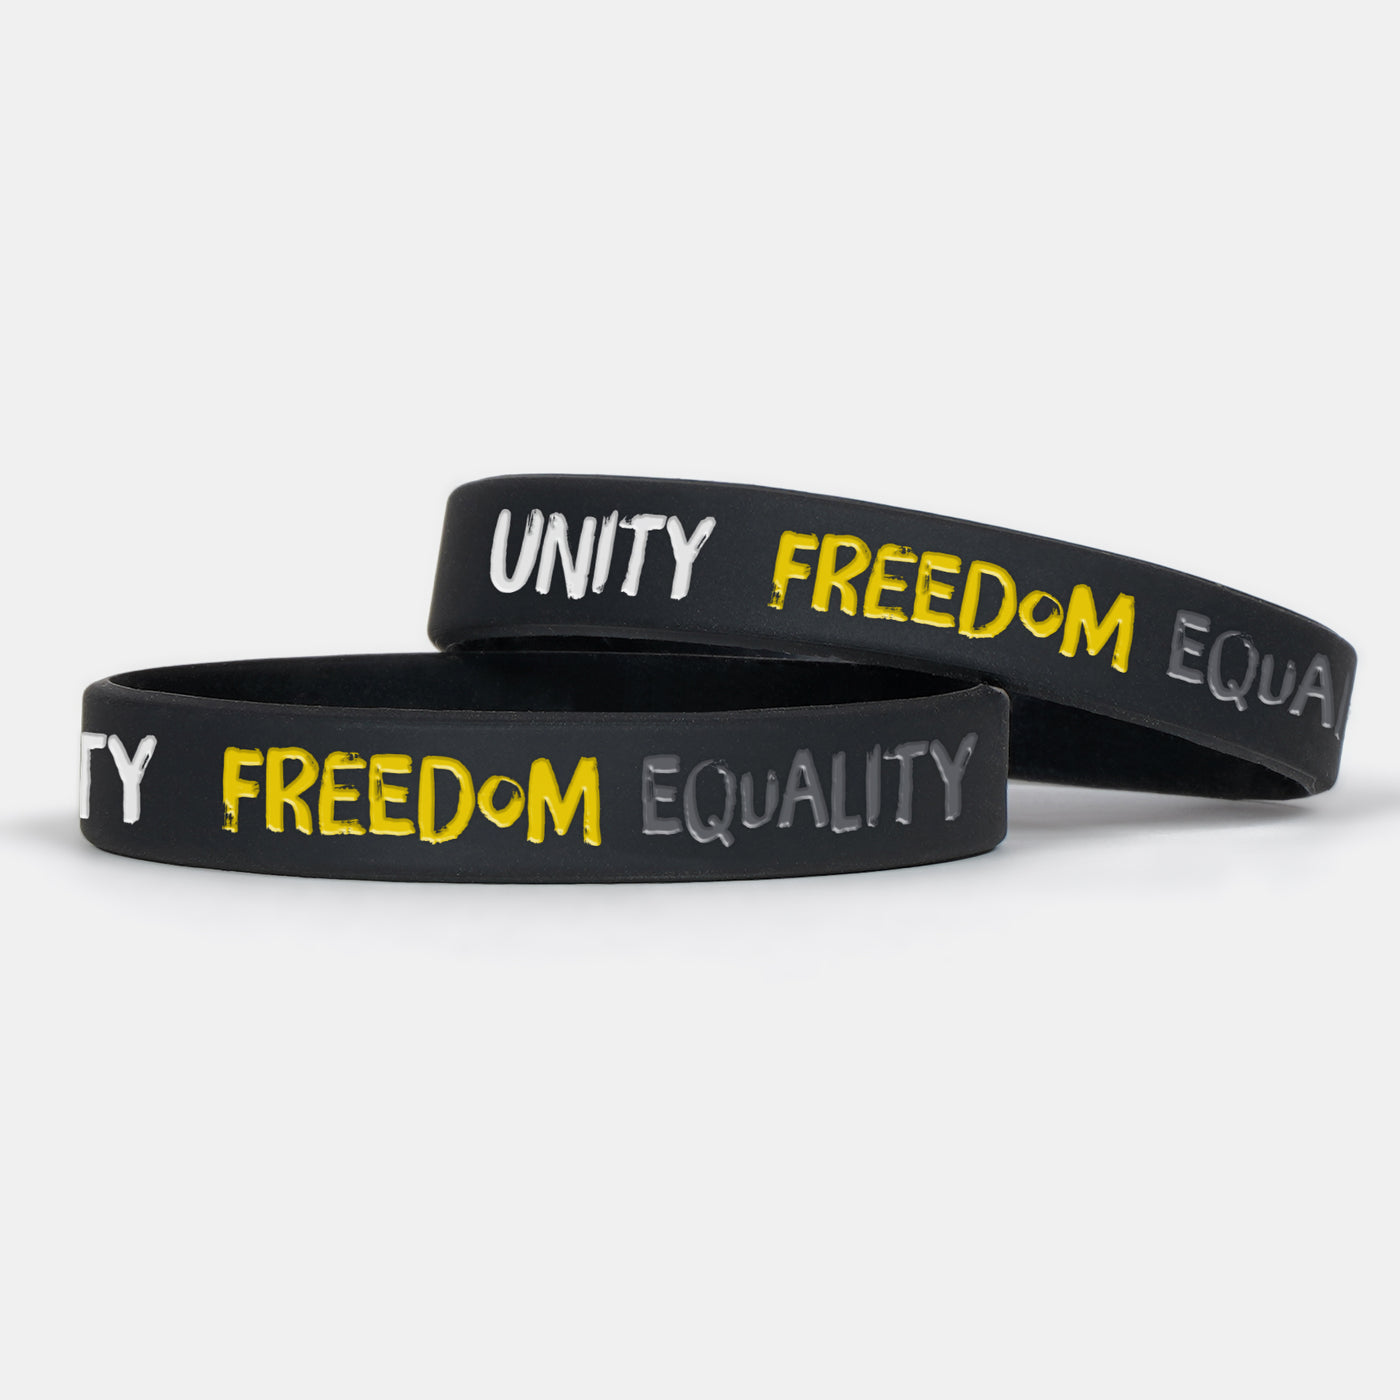 Unity Freedom Equality Motivational Wristband